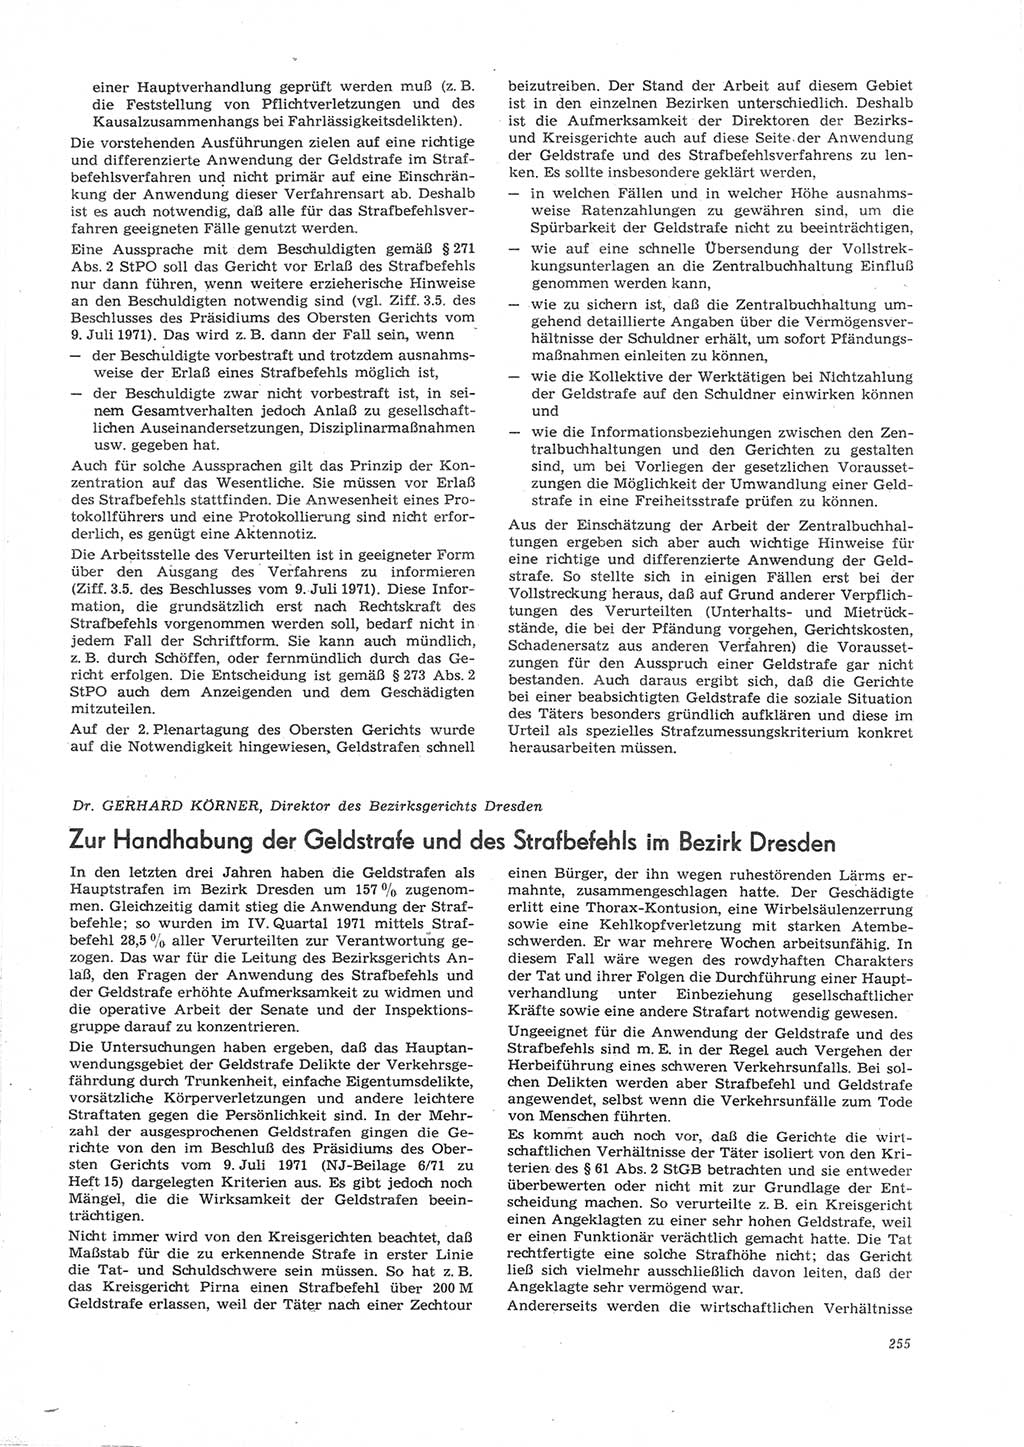 Neue Justiz (NJ), Zeitschrift für Recht und Rechtswissenschaft [Deutsche Demokratische Republik (DDR)], 26. Jahrgang 1972, Seite 255 (NJ DDR 1972, S. 255)